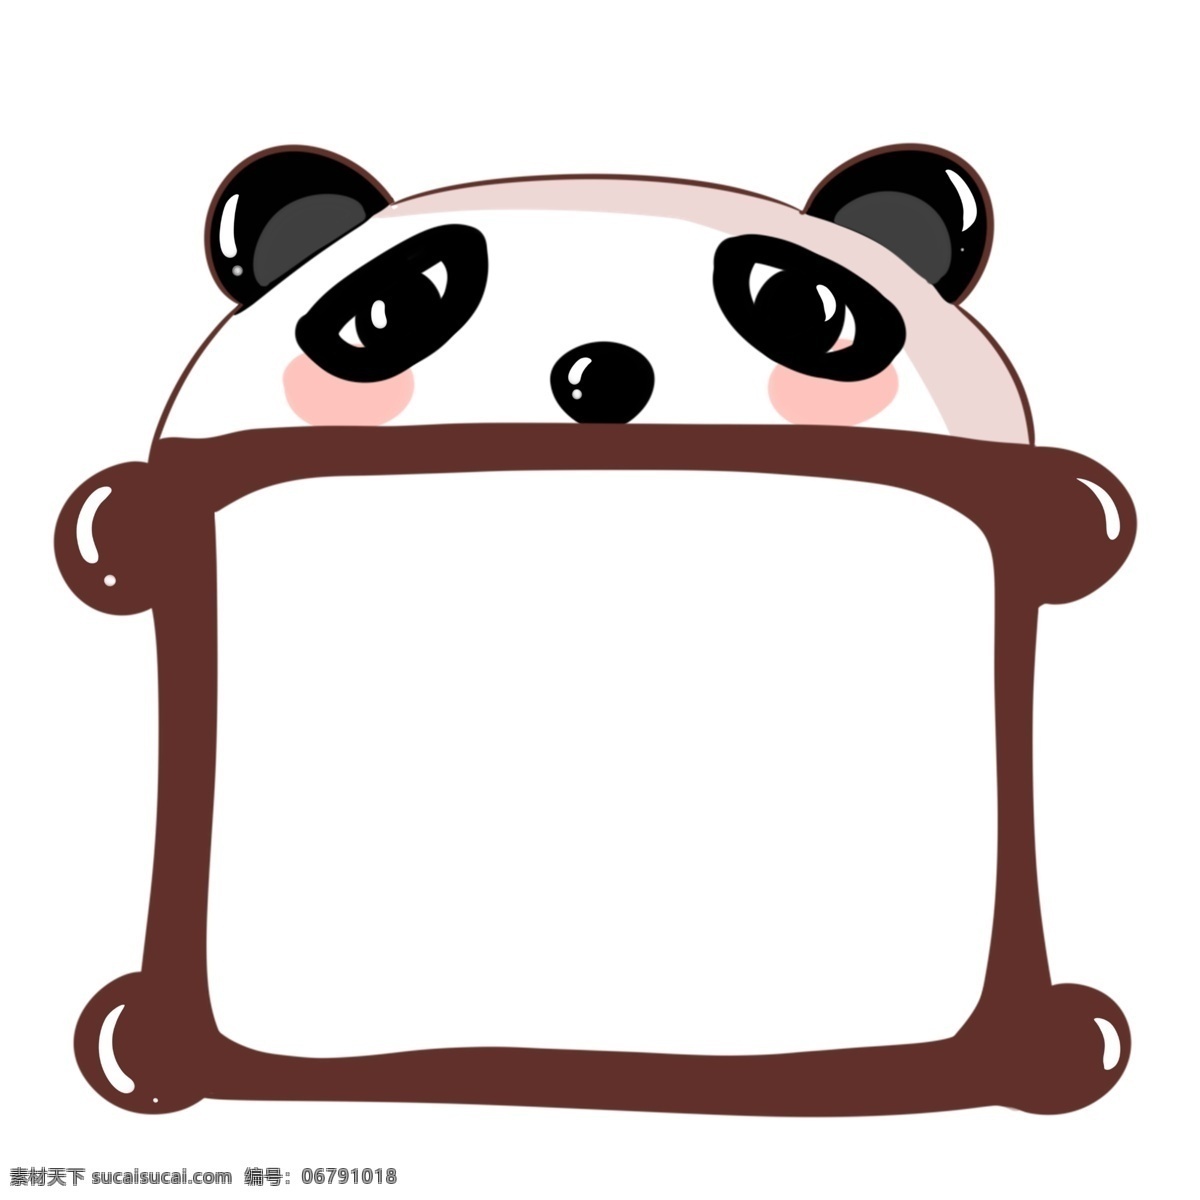 可爱 大熊猫 边框 插画 可爱边框 大熊猫边框 边框插图 边框插画 国宝 动物边框